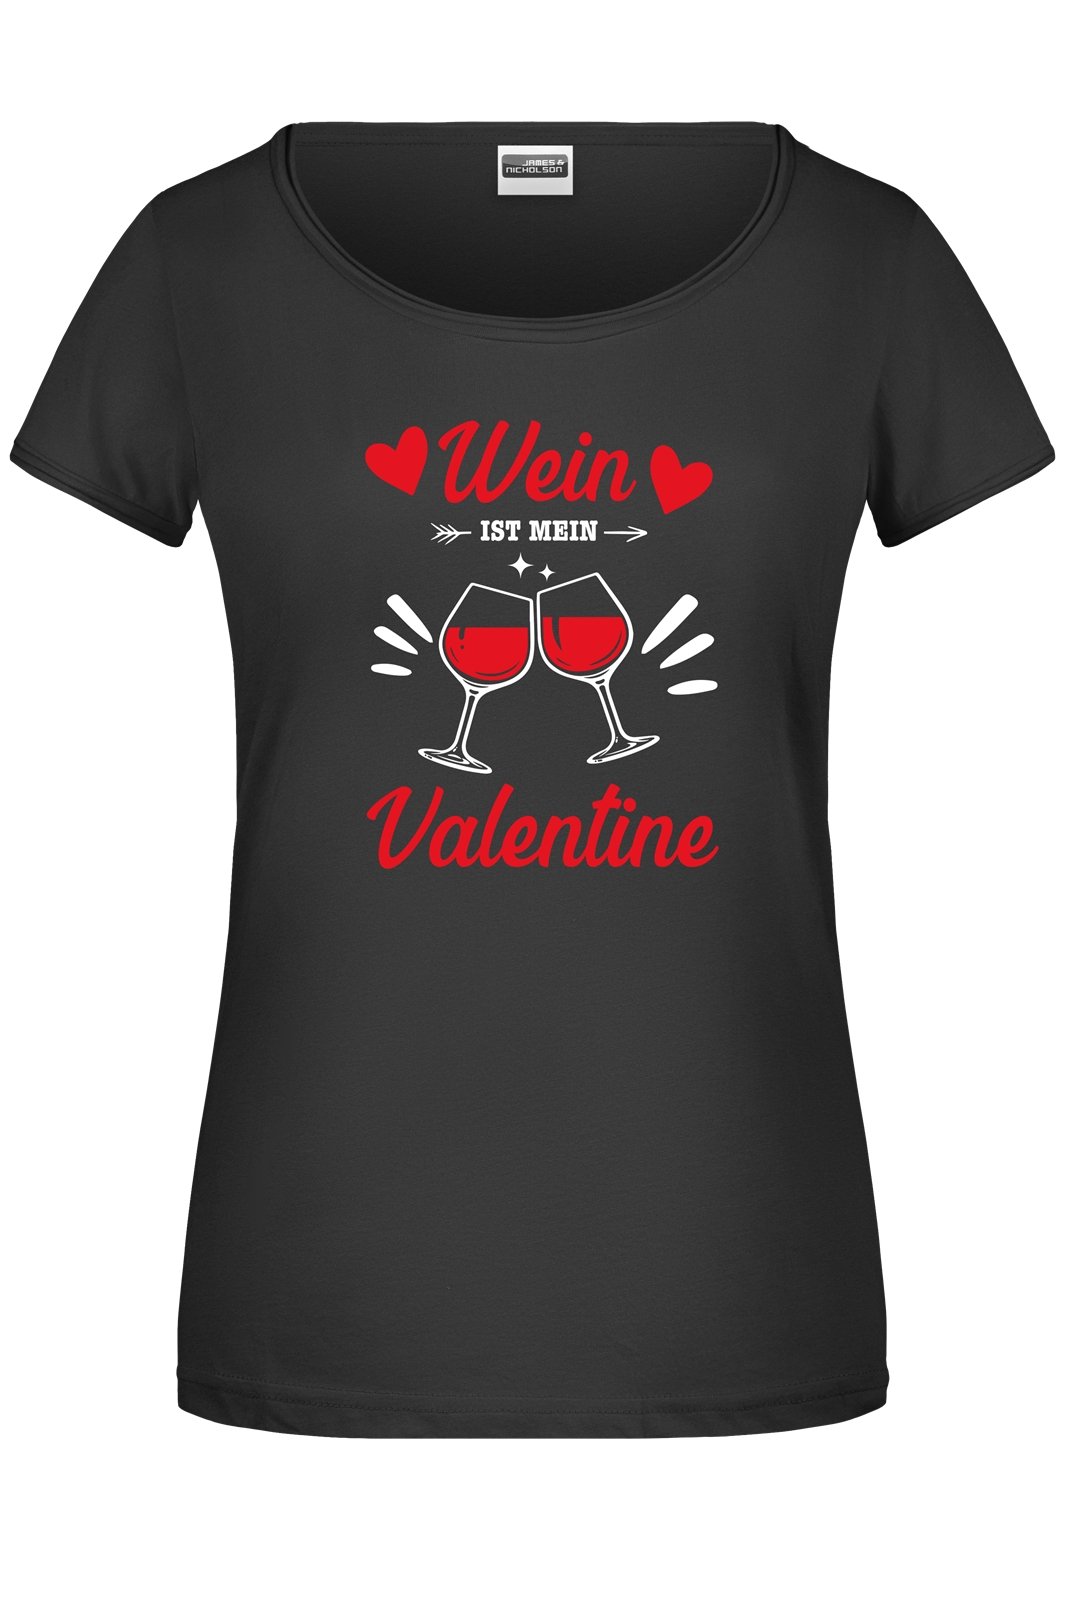 Bild: T-Shirt - Wein ist mein Valentine Geschenkidee